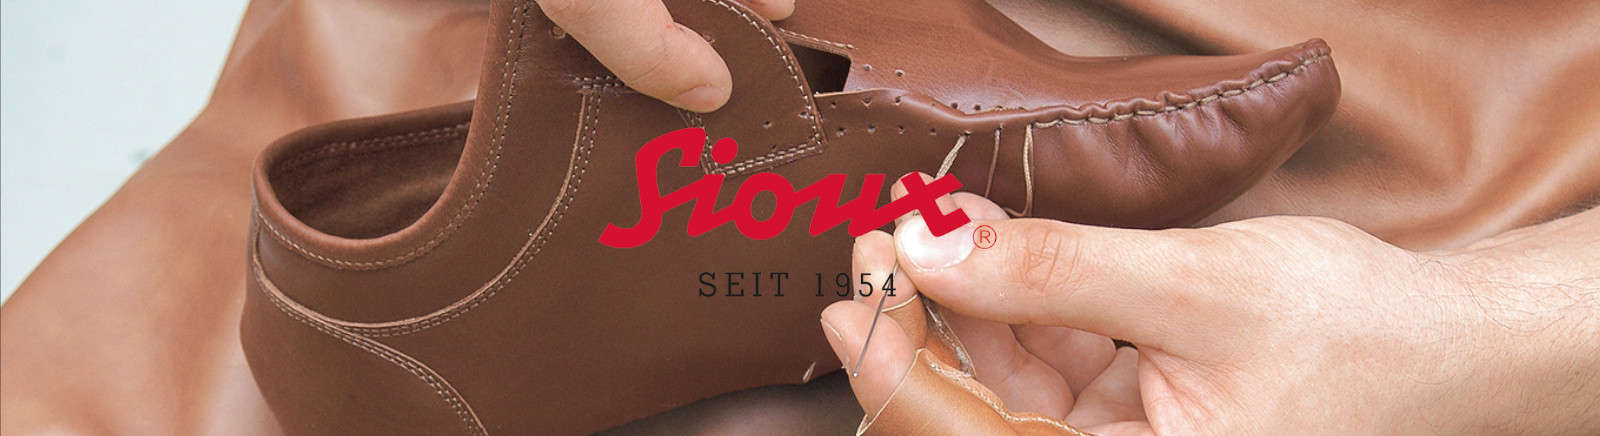 Sioux Damenschuhe online entdecken im Schuhe Shop von Juppen